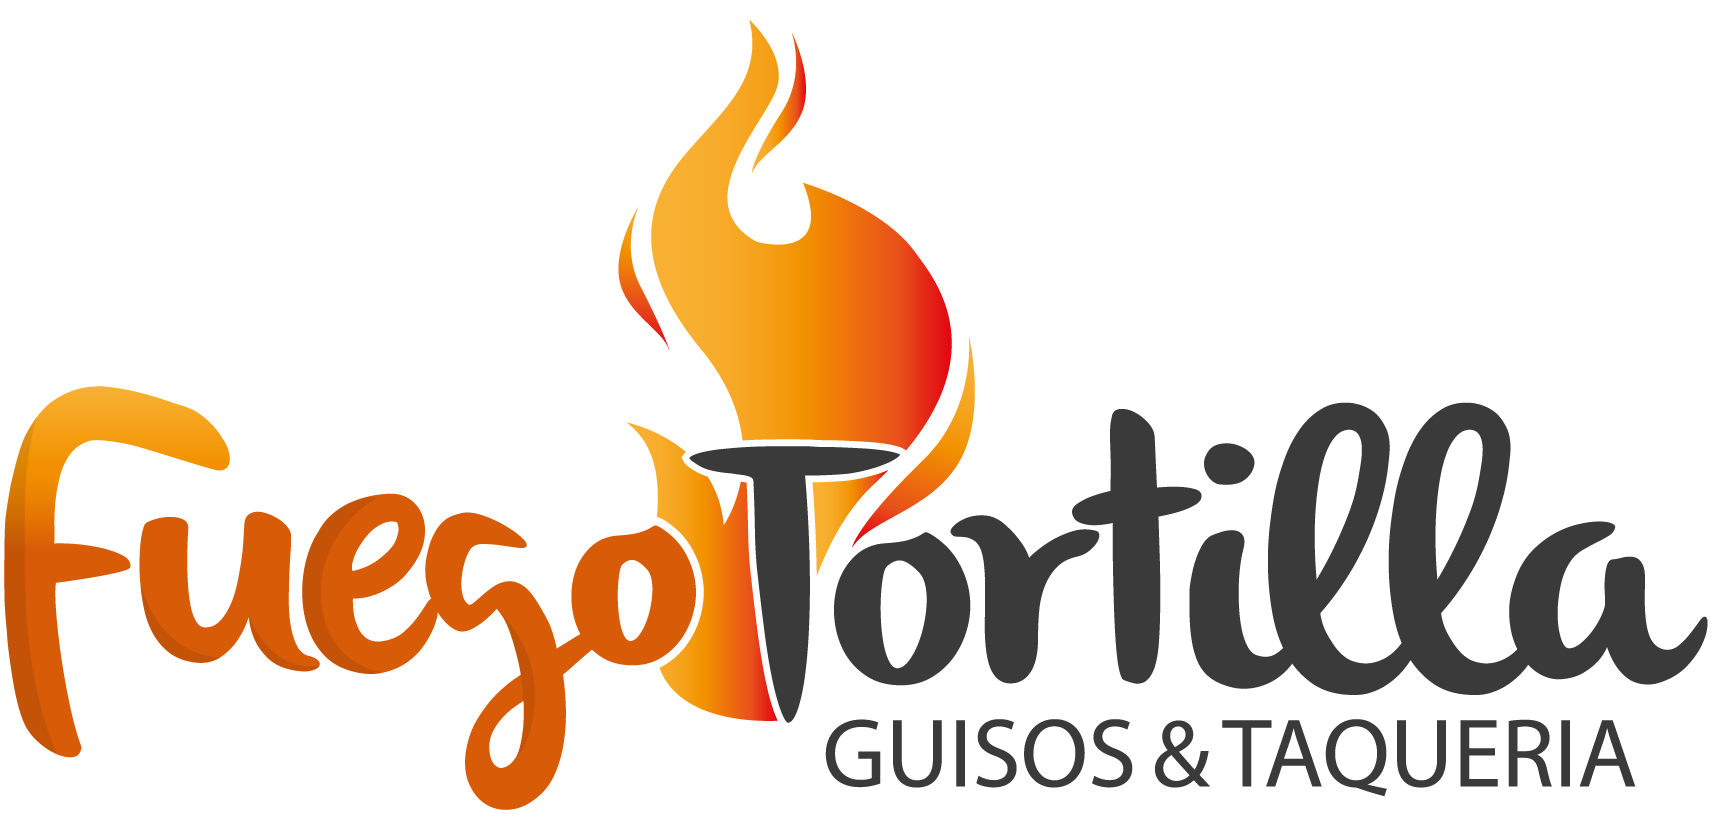 Fuego Tortilla Guisos & Taqueria